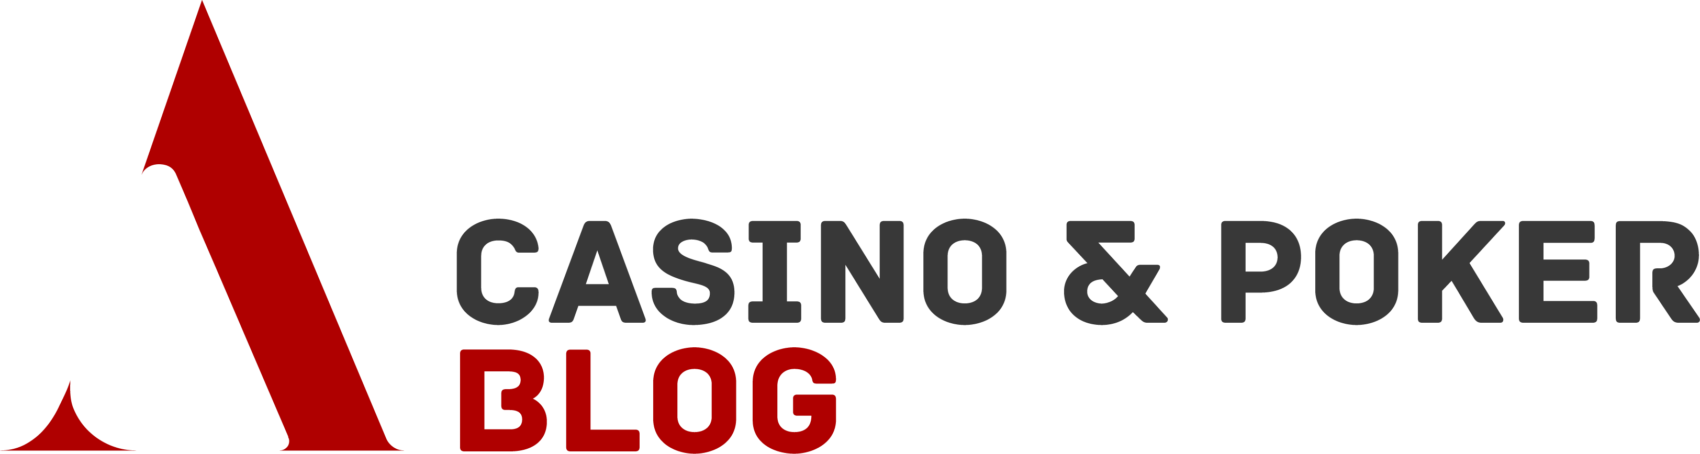 Najväčšie výhry v kasínach v histórii Las Vegas